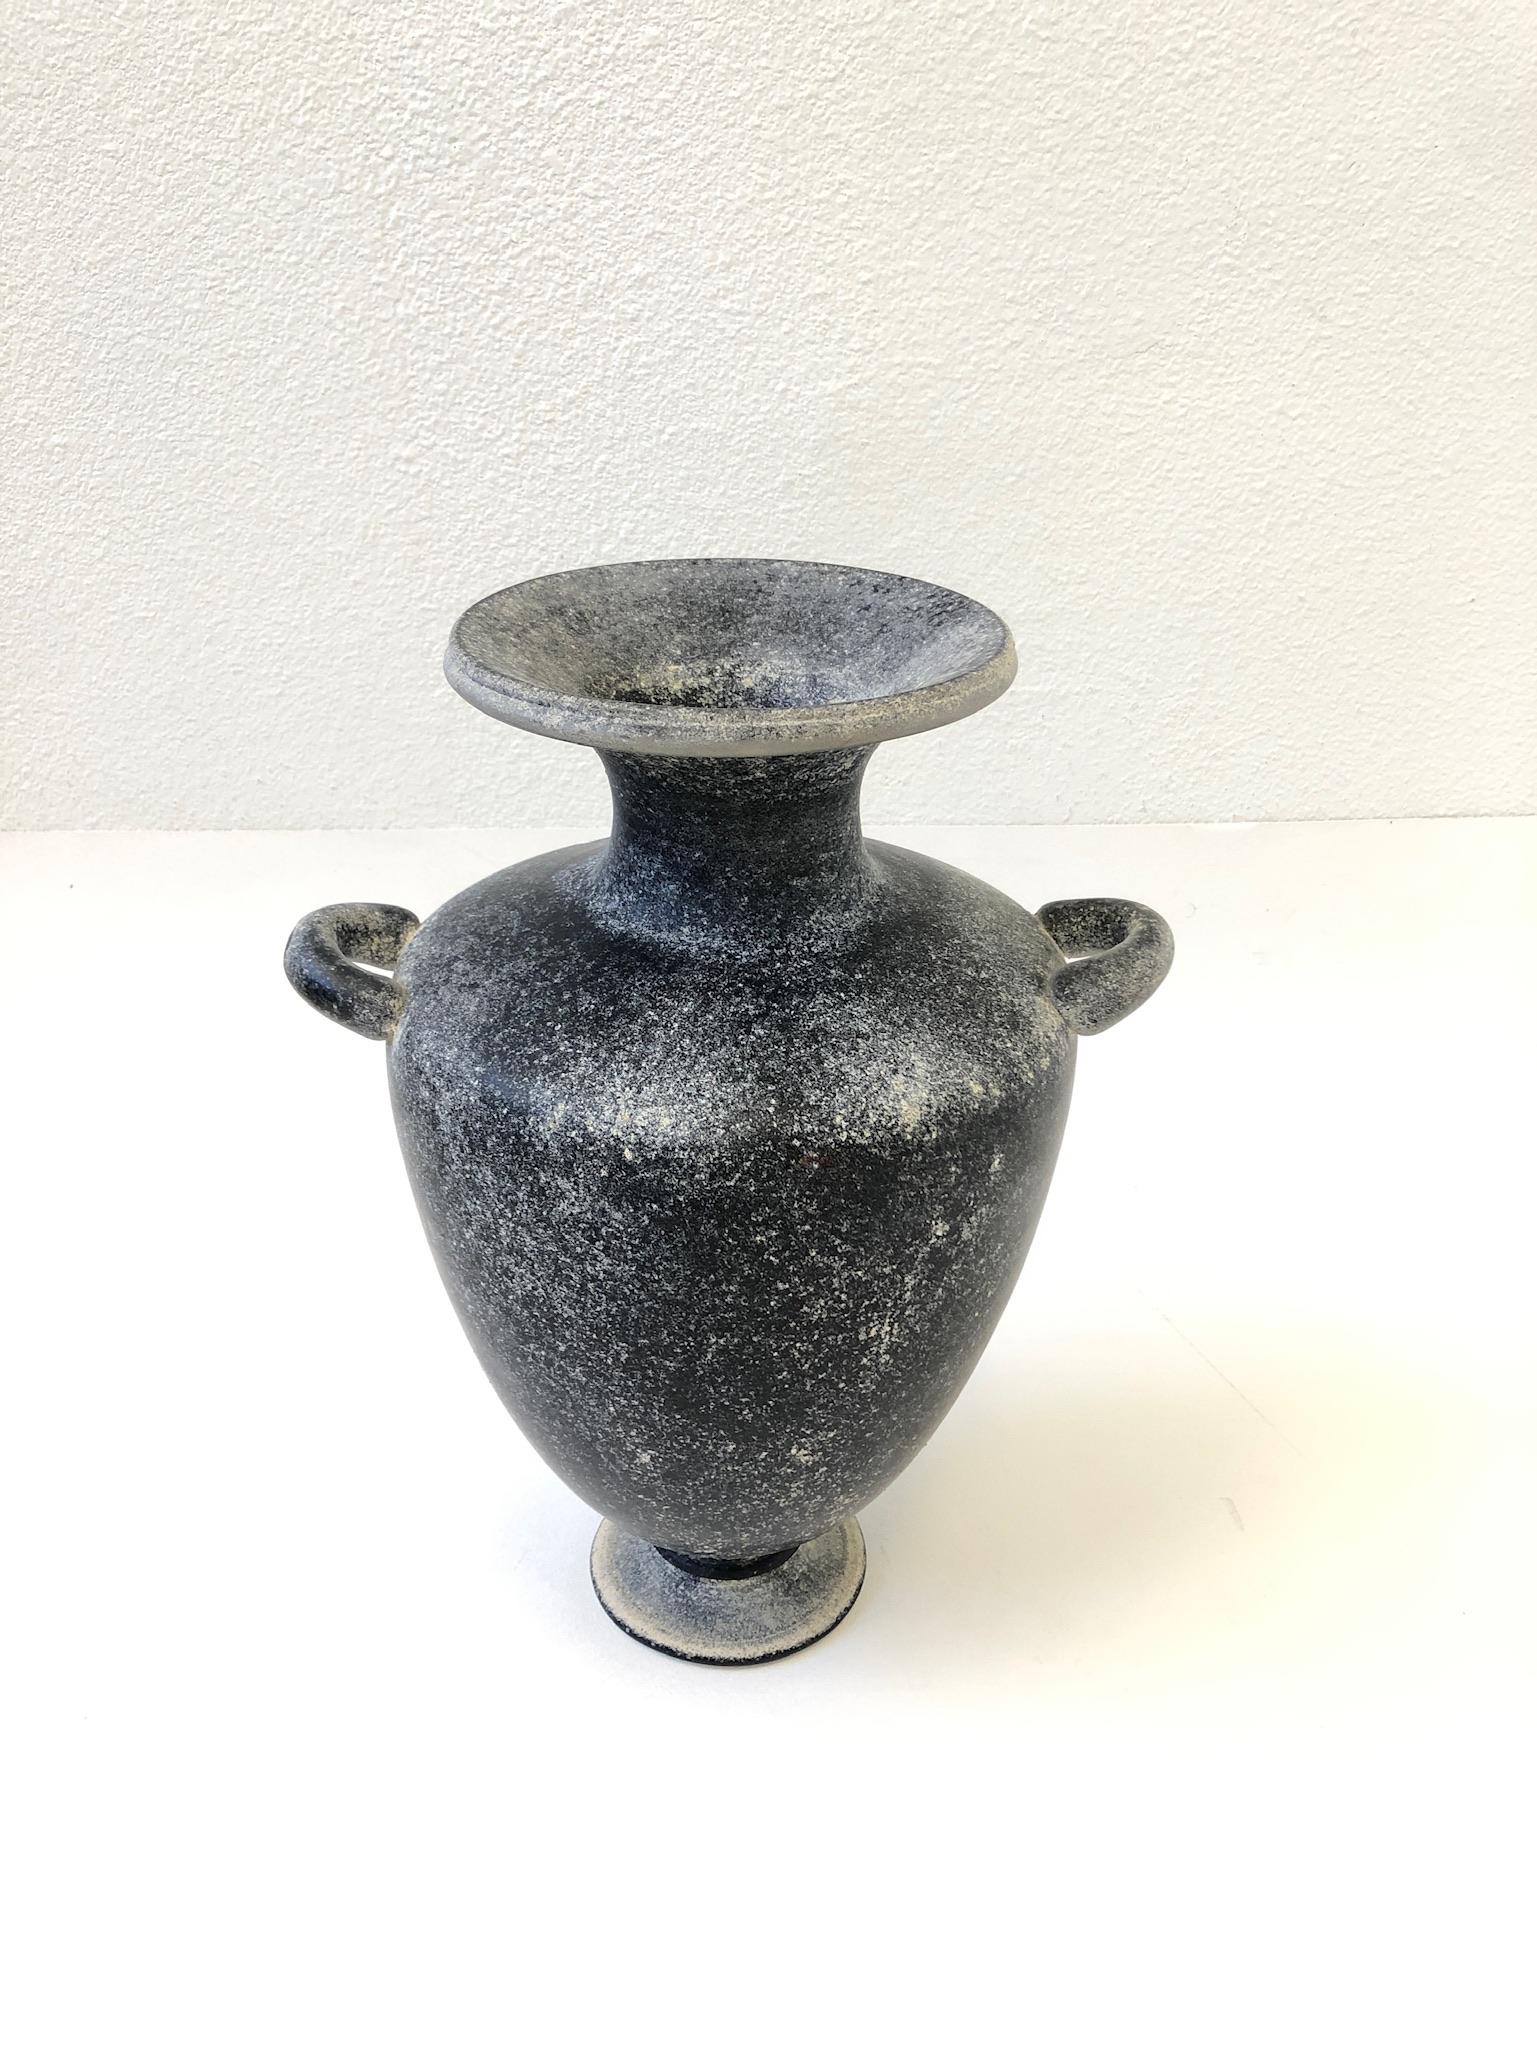 Große Vase aus schwarzem Muranoglas der 1980er Jahre von Seguso Vetri d'Arte.
Die Vase ist handsigniert.
Aus einem Nachlass von Steve Chase.
Abmessungen: 17.5